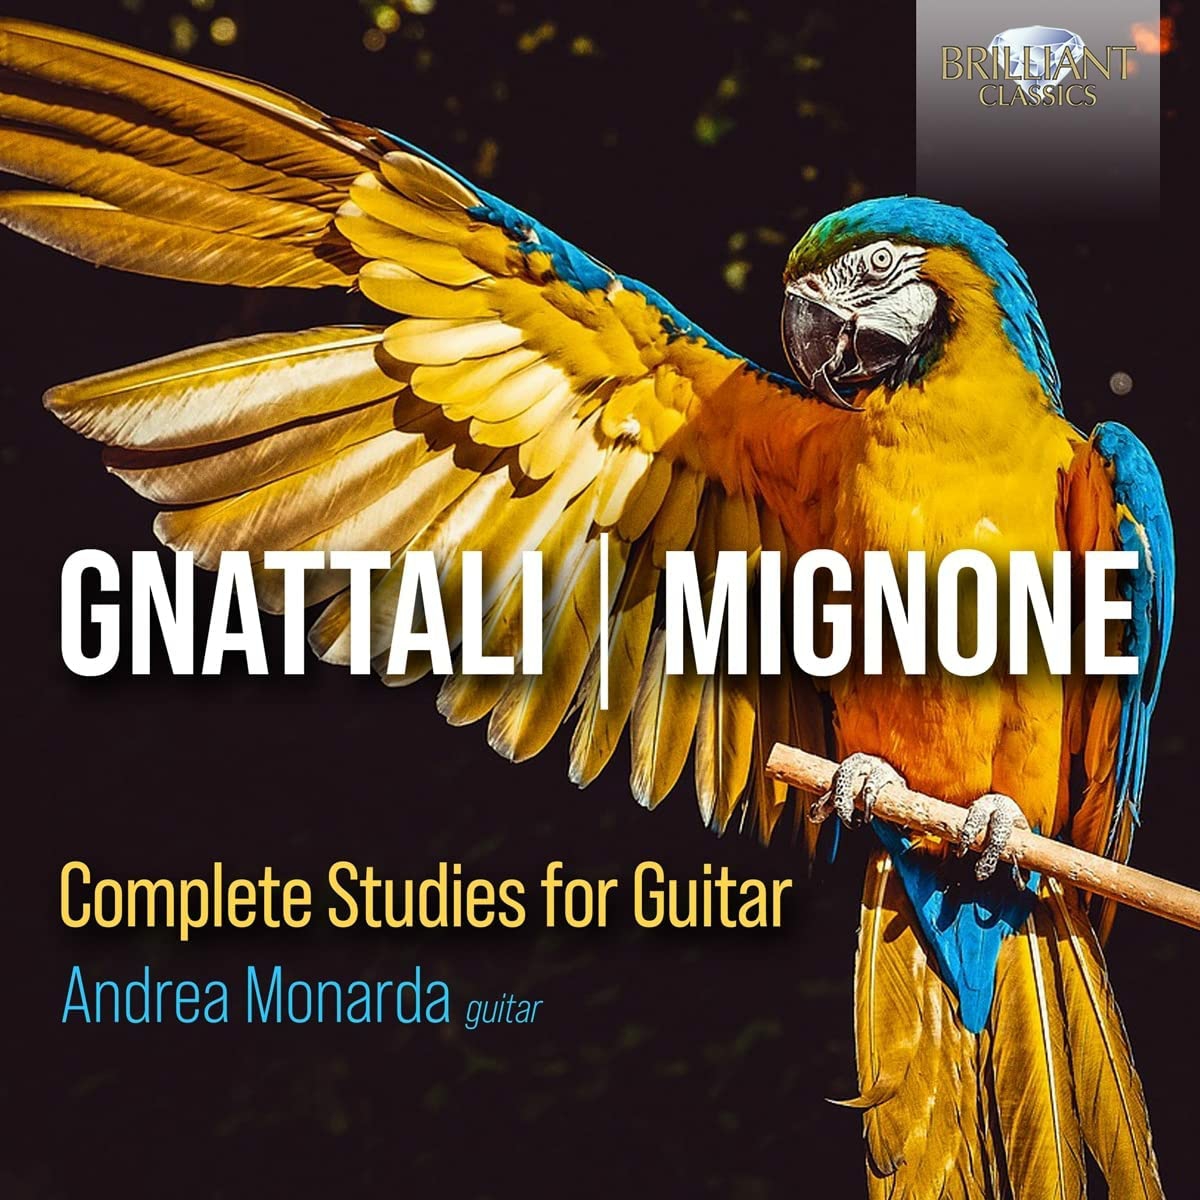 Francisco Mignone, Radamés Gnattali Complete Studies for Guitar, Andrea Monarda